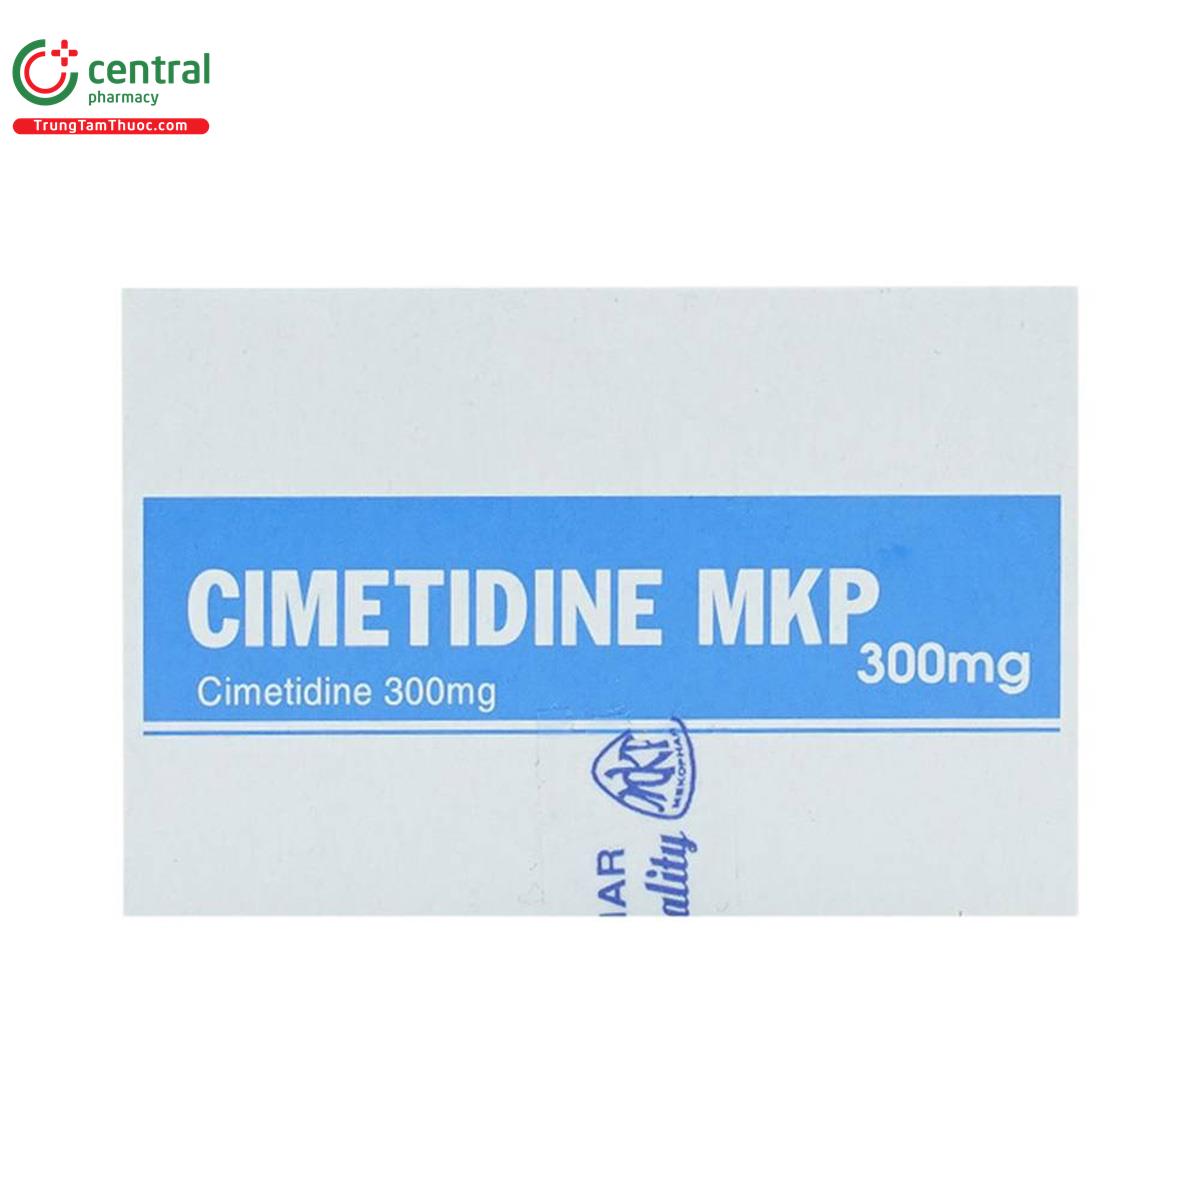 cimetidine mkp 300mg 7 N5256